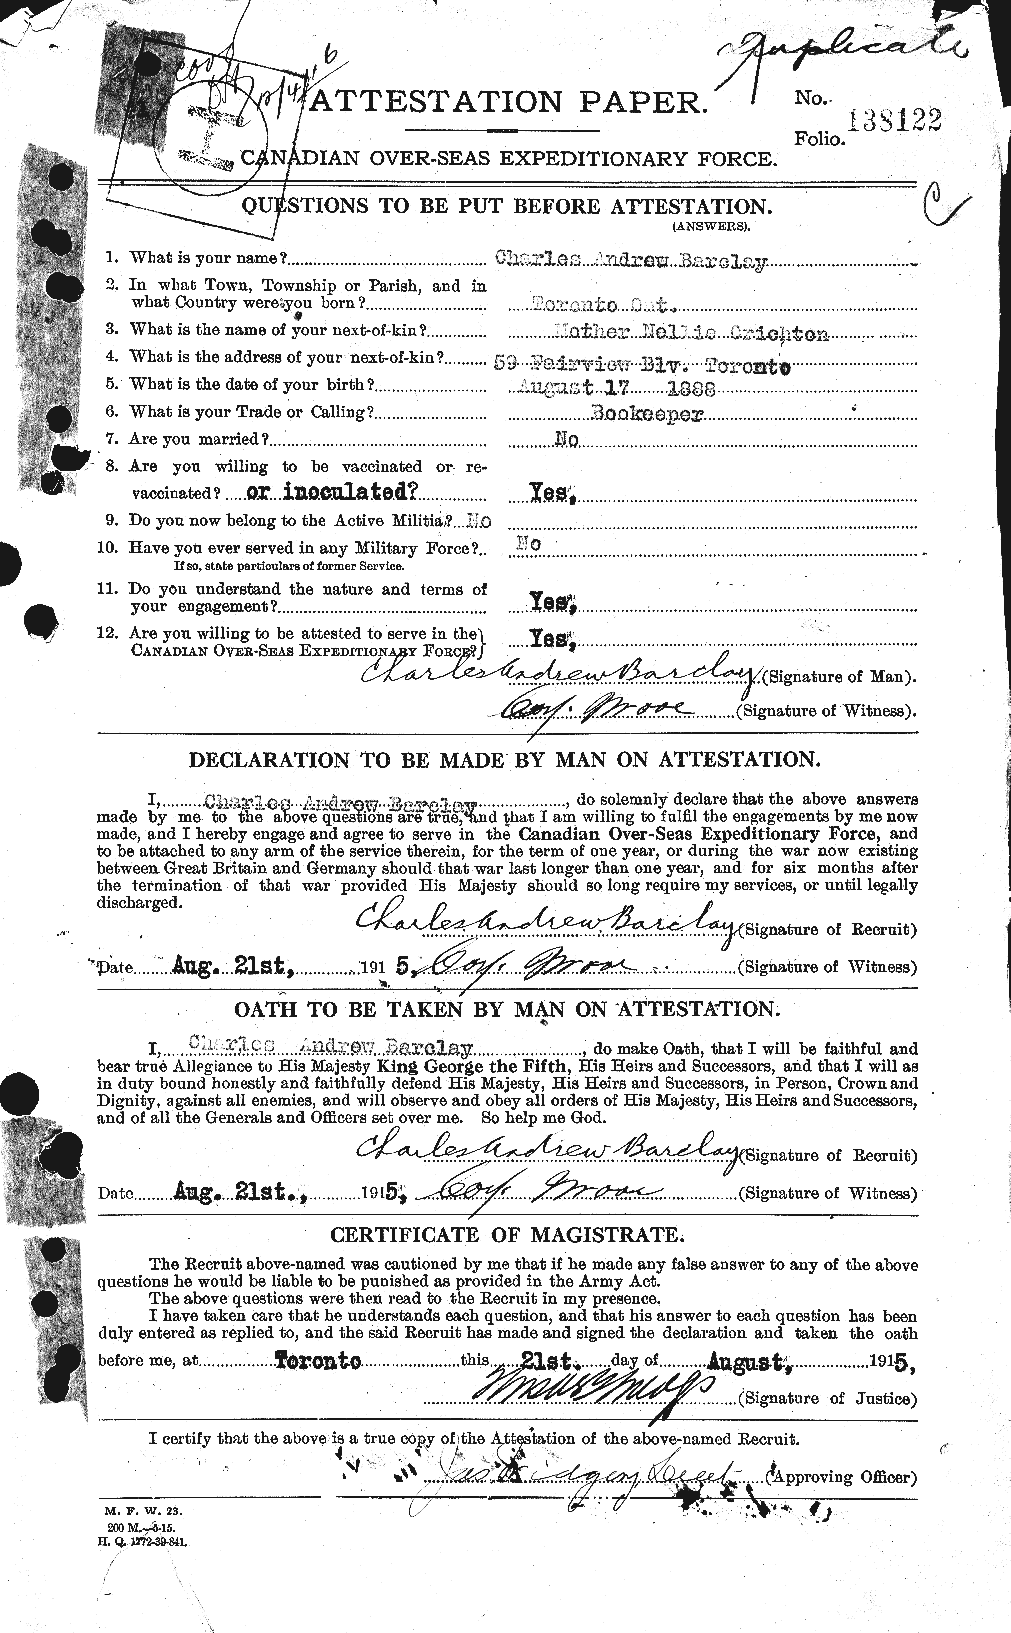 Dossiers du Personnel de la Première Guerre mondiale - CEC 220953a